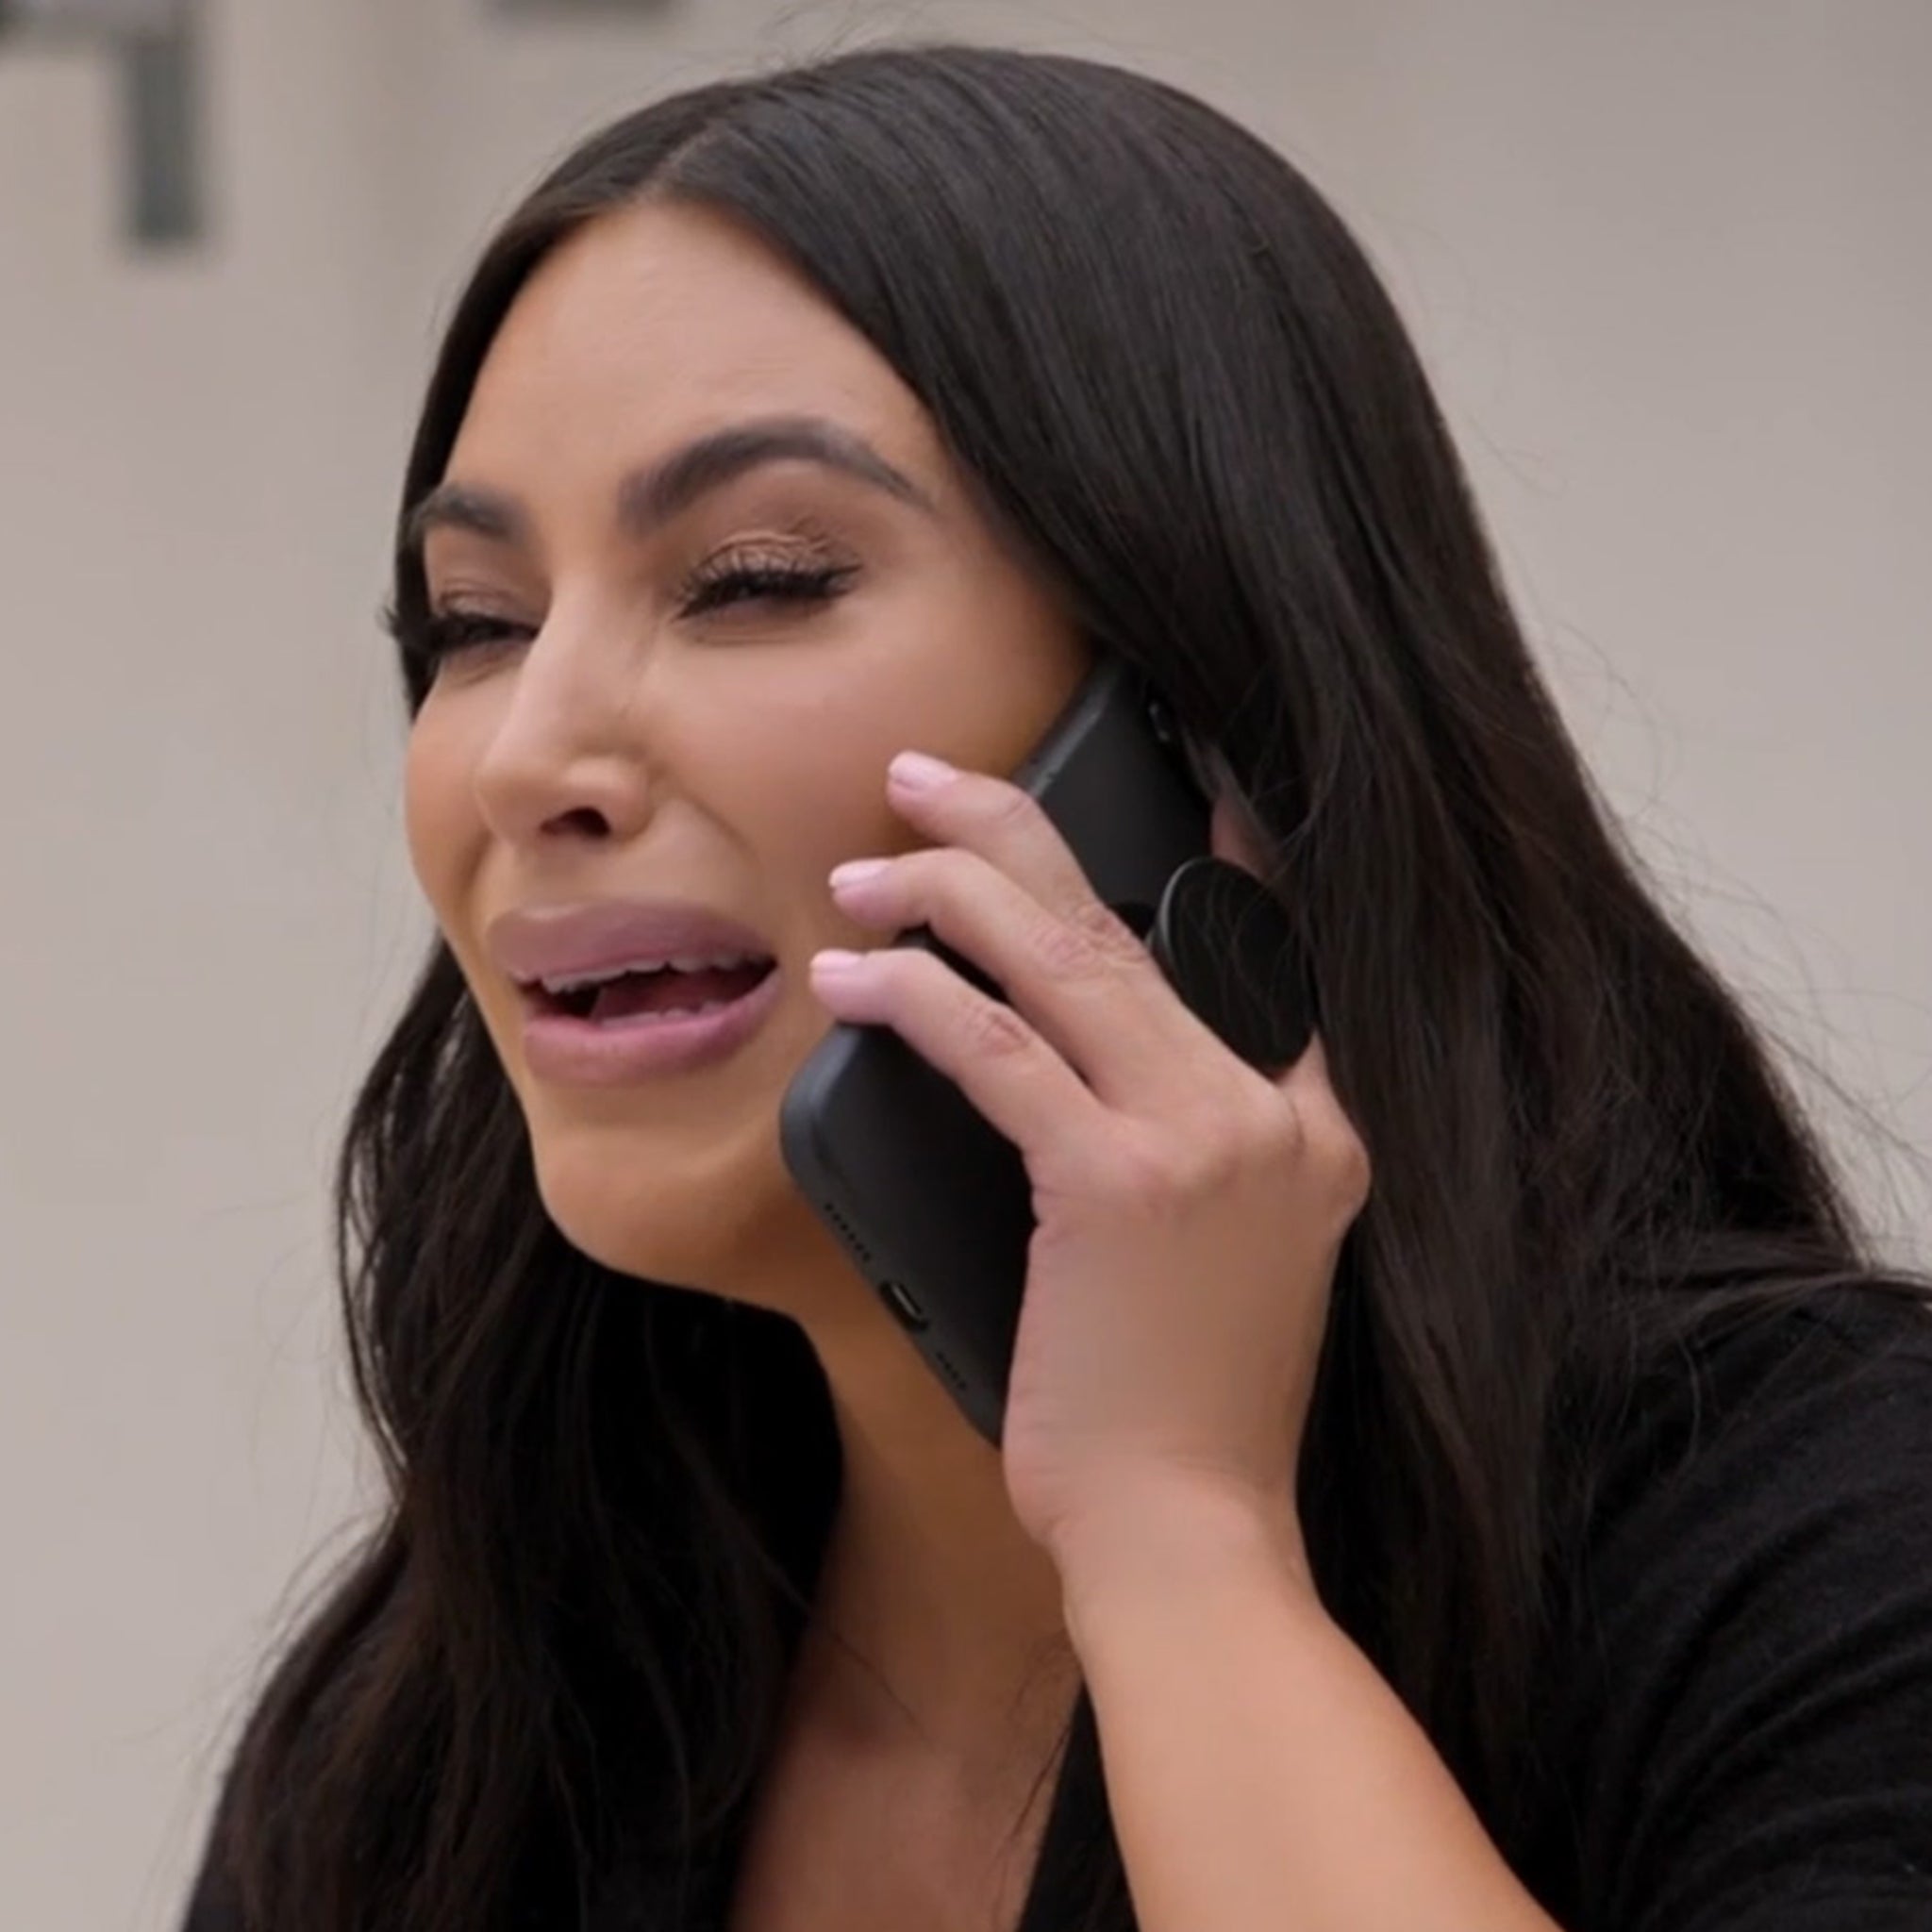 Kim Kardashian Was Joking About Dildos in Sex Tape Conversation